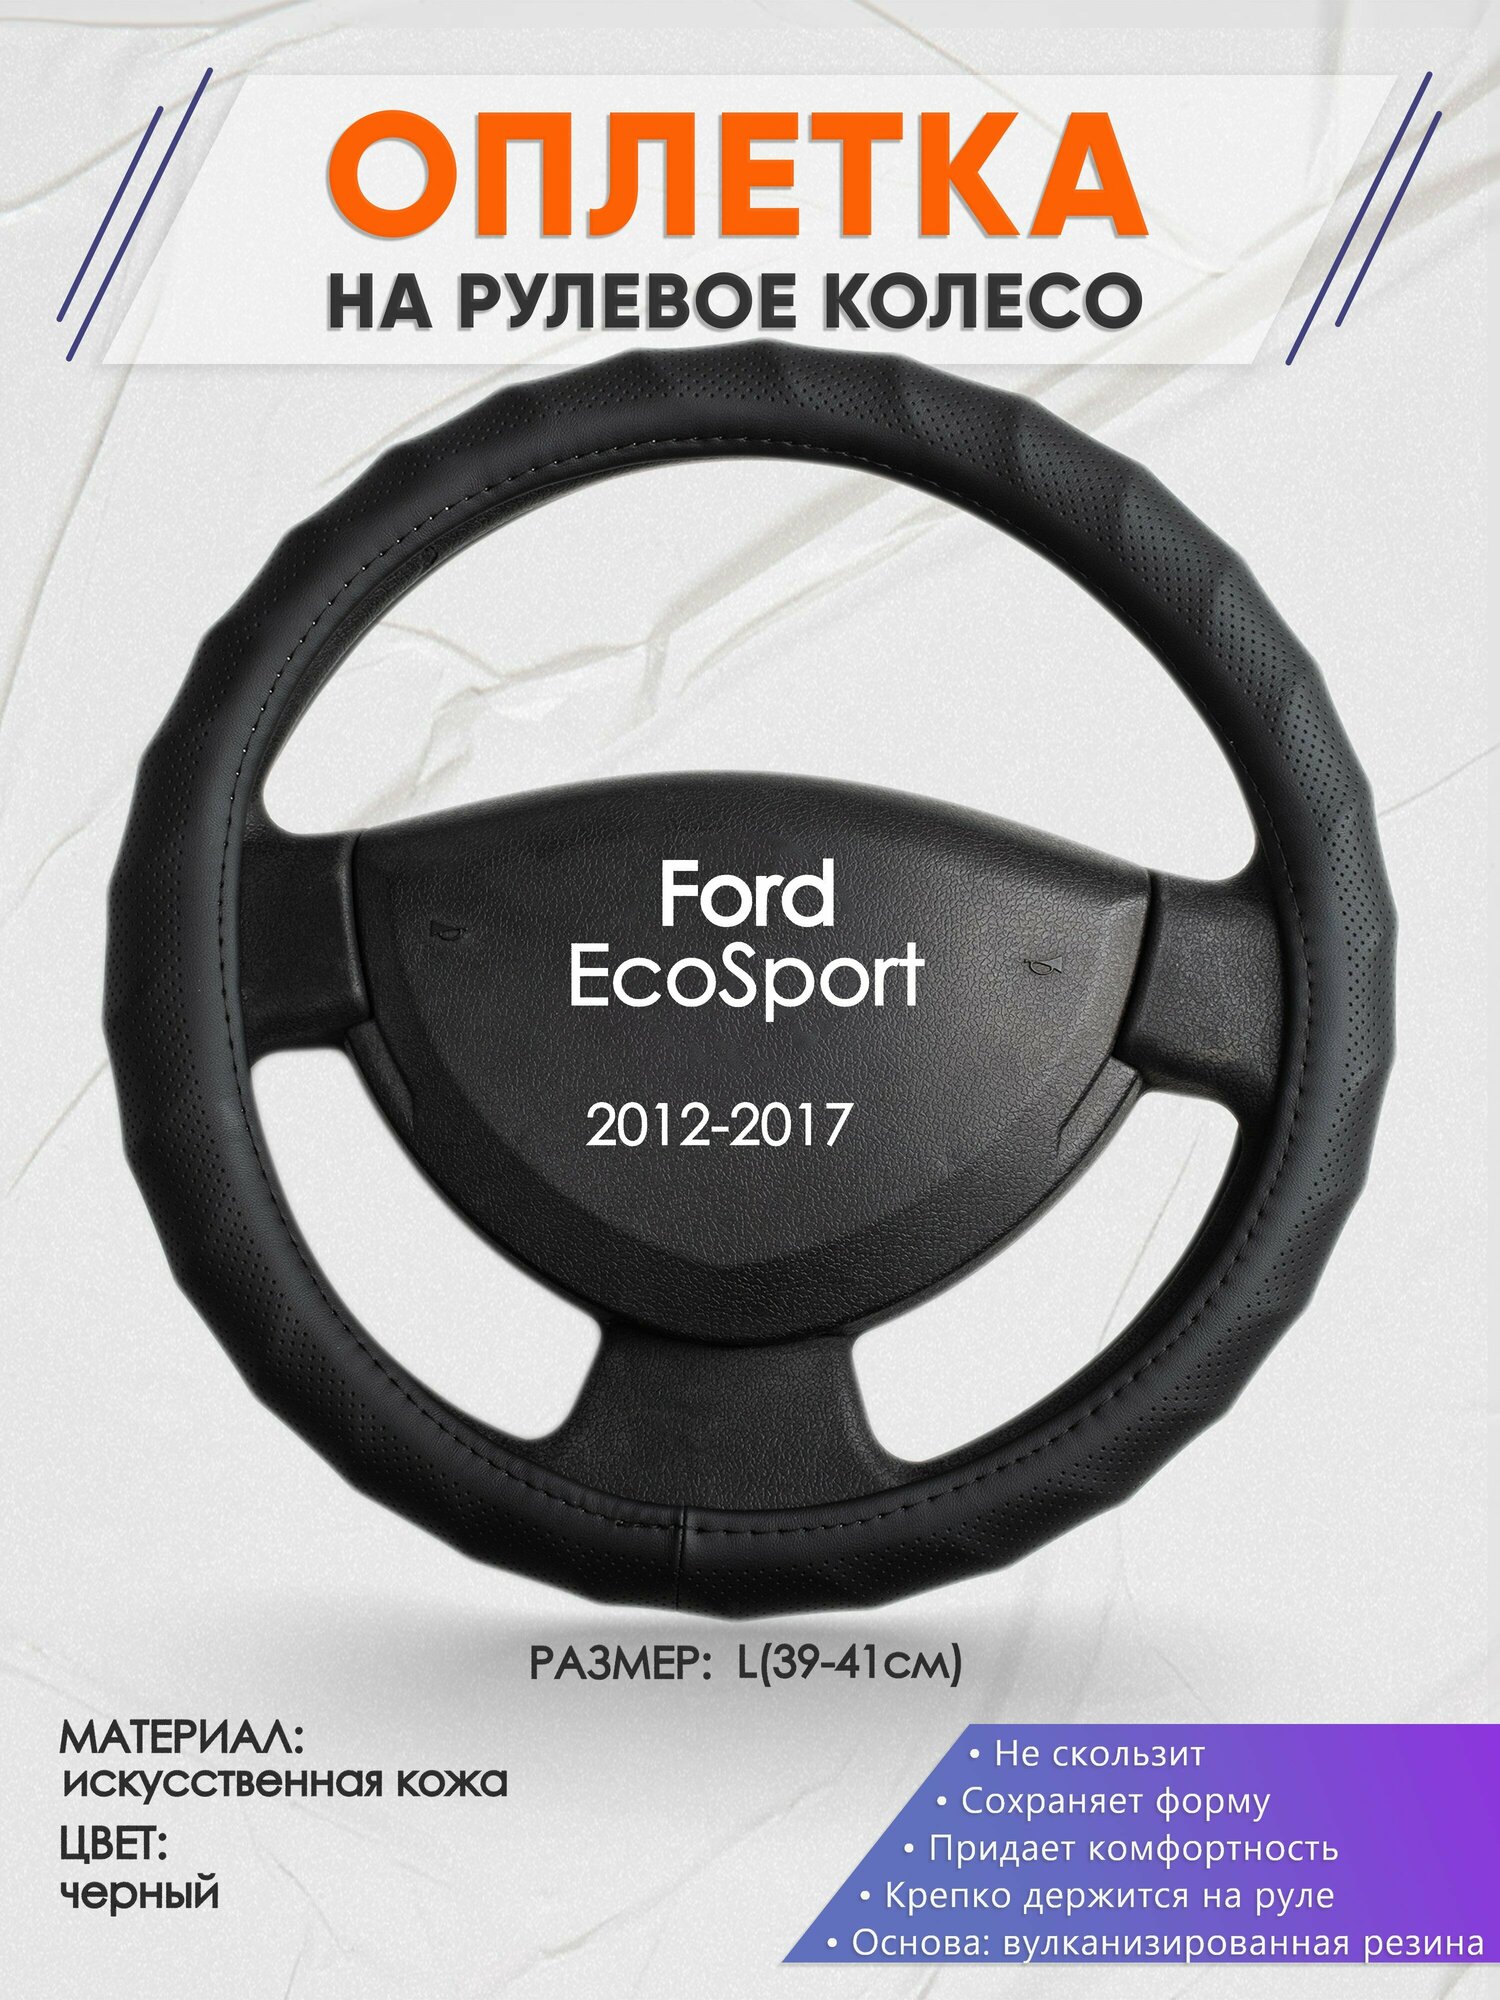 Оплетка на руль для Ford EcoSport (Форд Экоспорт) 2012-2017 L(39-41см) Искусственная кожа 58